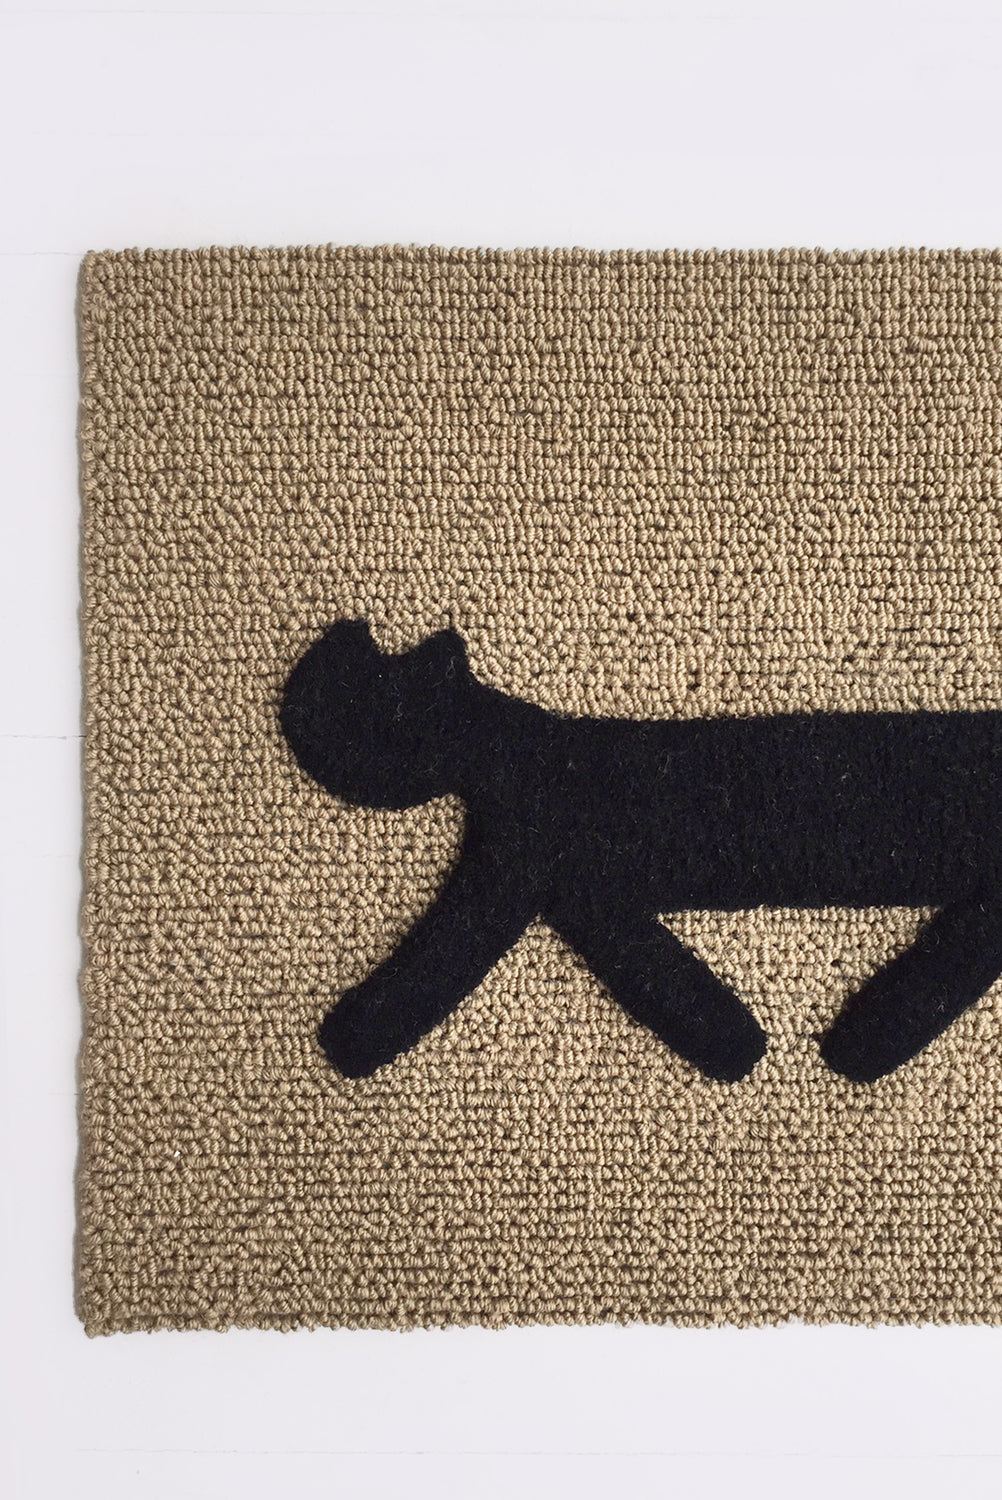 Cat Doormat, "Rondo" Black